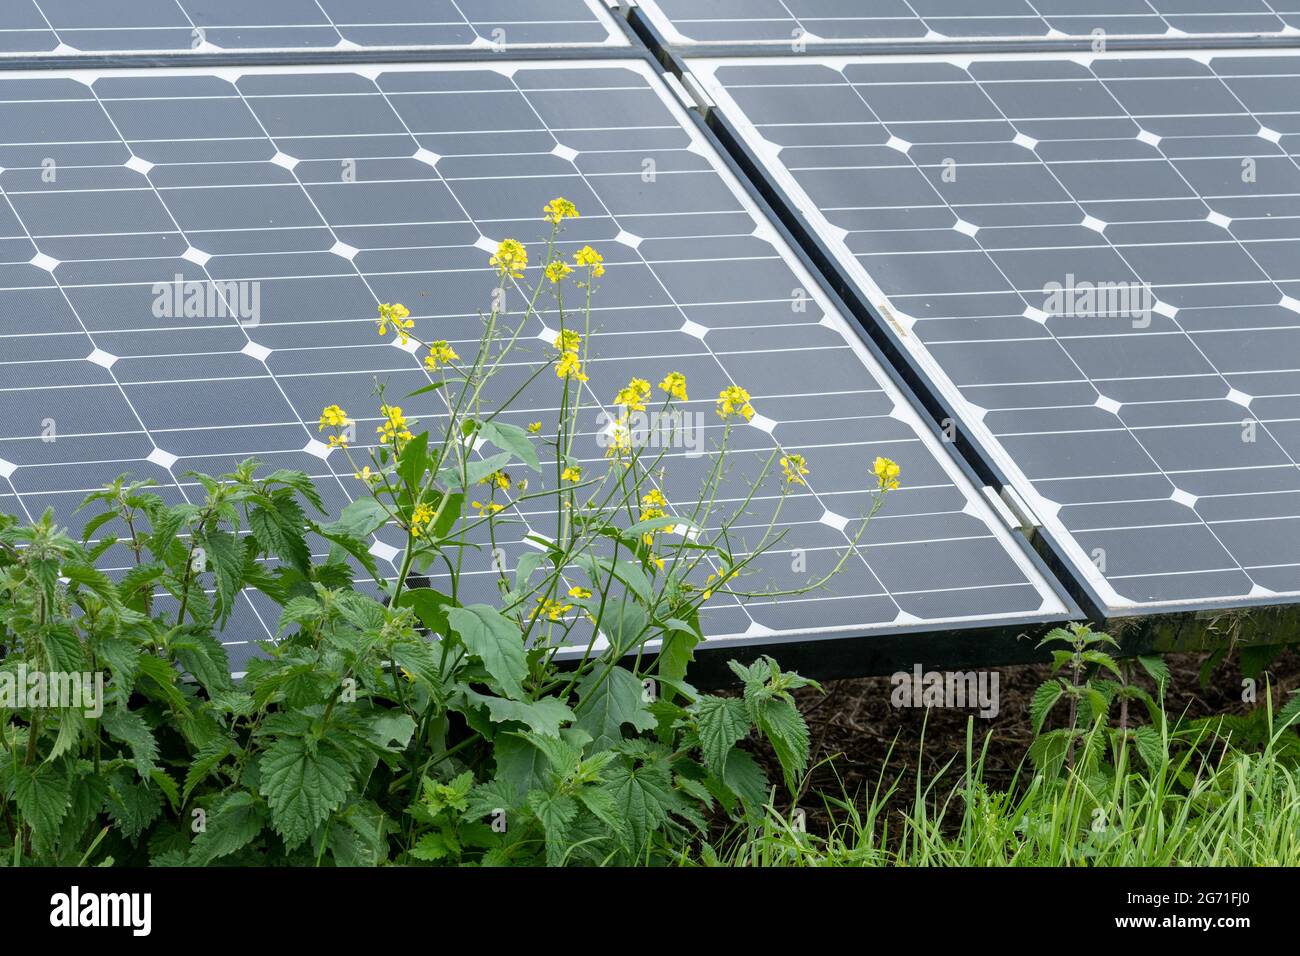 Panneaux d'énergie solaire dans un champ dans la campagne du Royaume-Uni pour produire de l'électricité renouvelable à partir de la lumière du soleil Banque D'Images